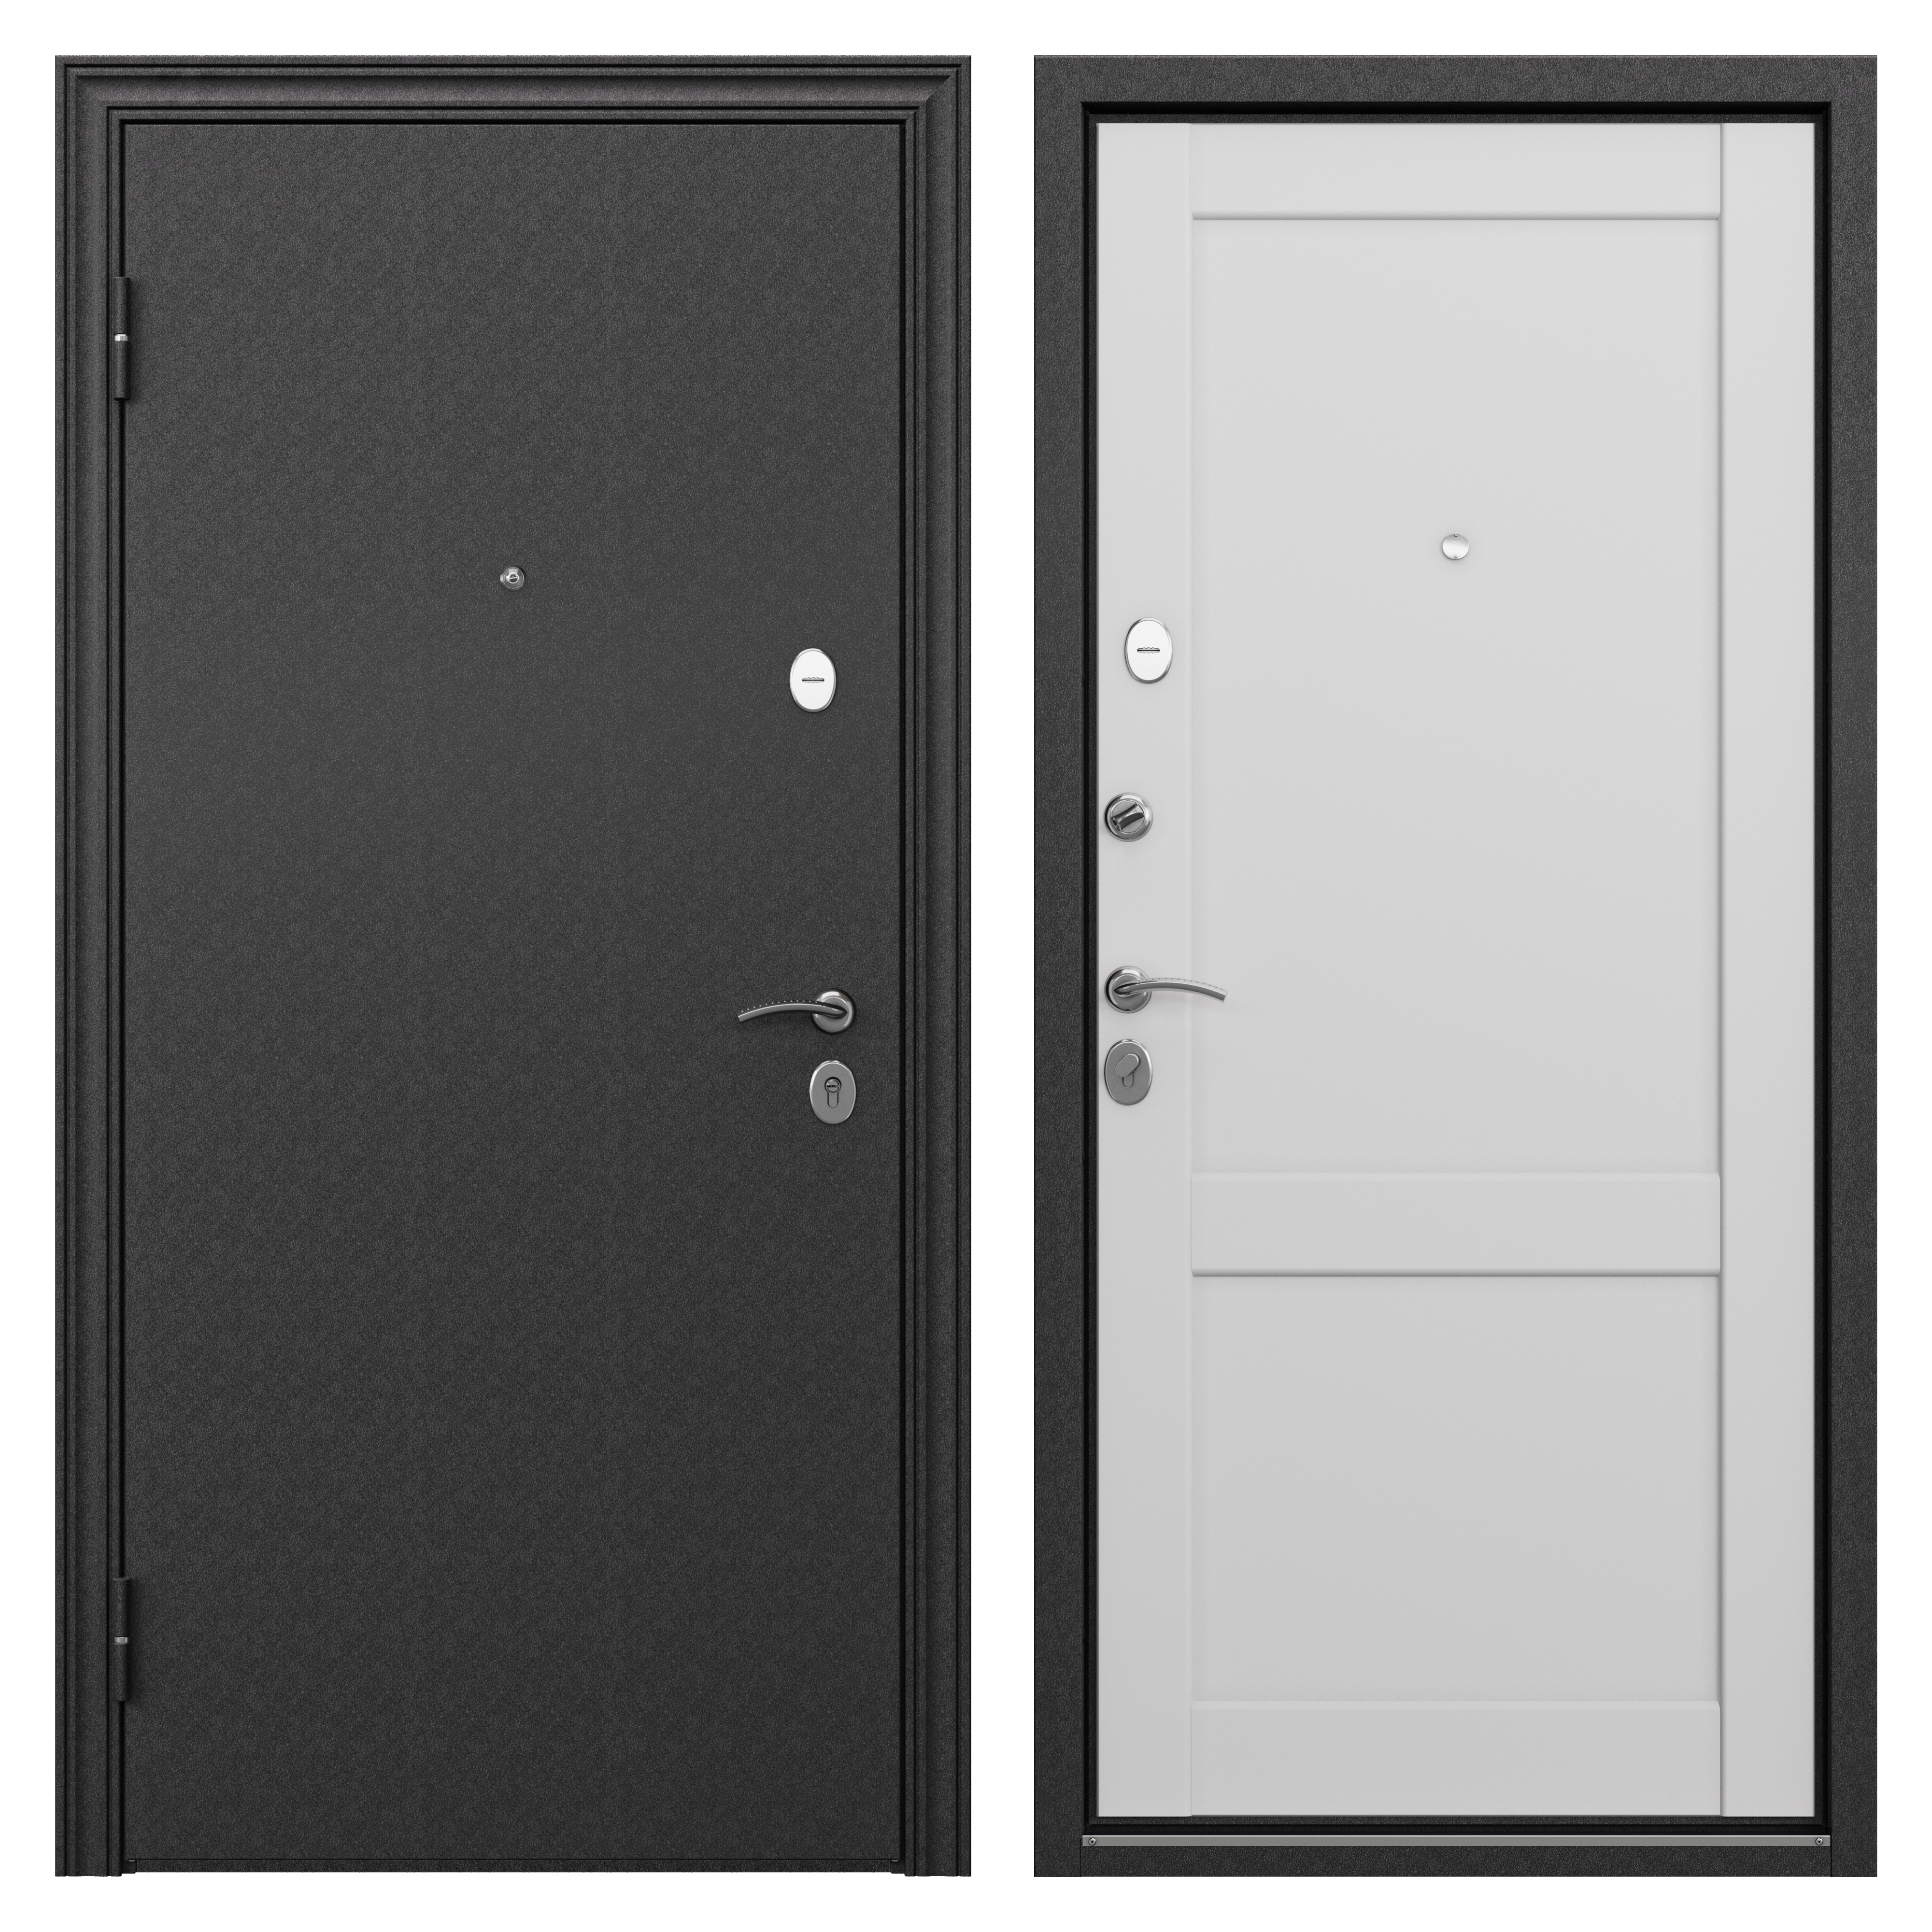 83404268 Дверь входная металлическая Ронда,950 мм, левая, цвет танганика STLM-0040915 TOREX